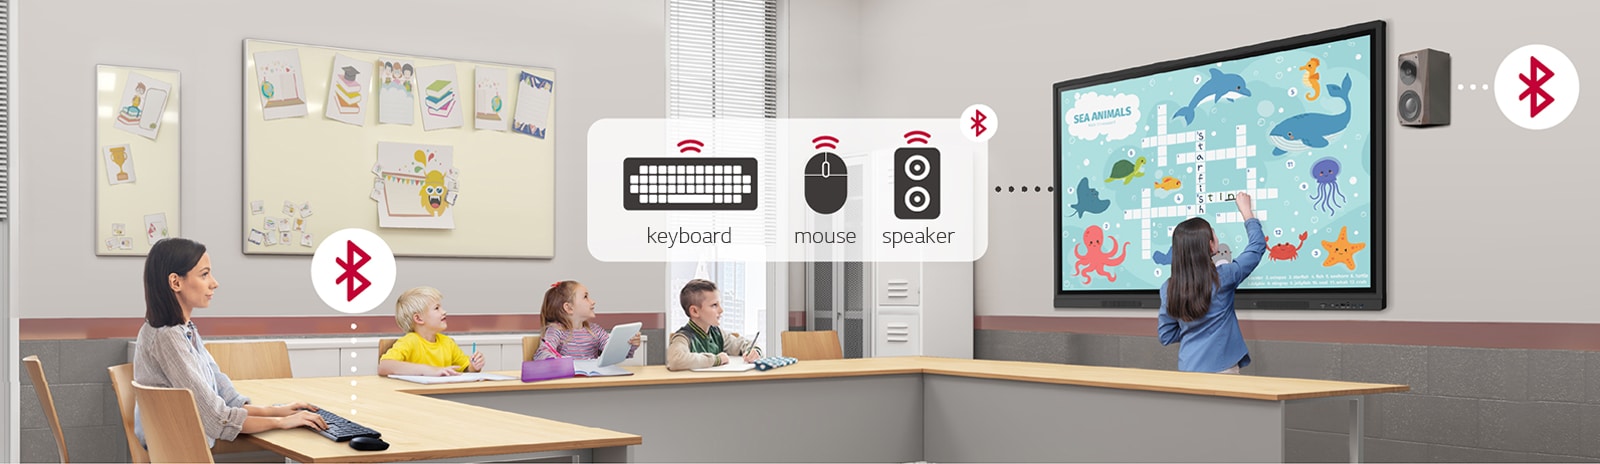 O LG CreateBoard pode conectar-se sem fio a dispositivos como teclados, mouses e alto-falantes via Bluetooth.